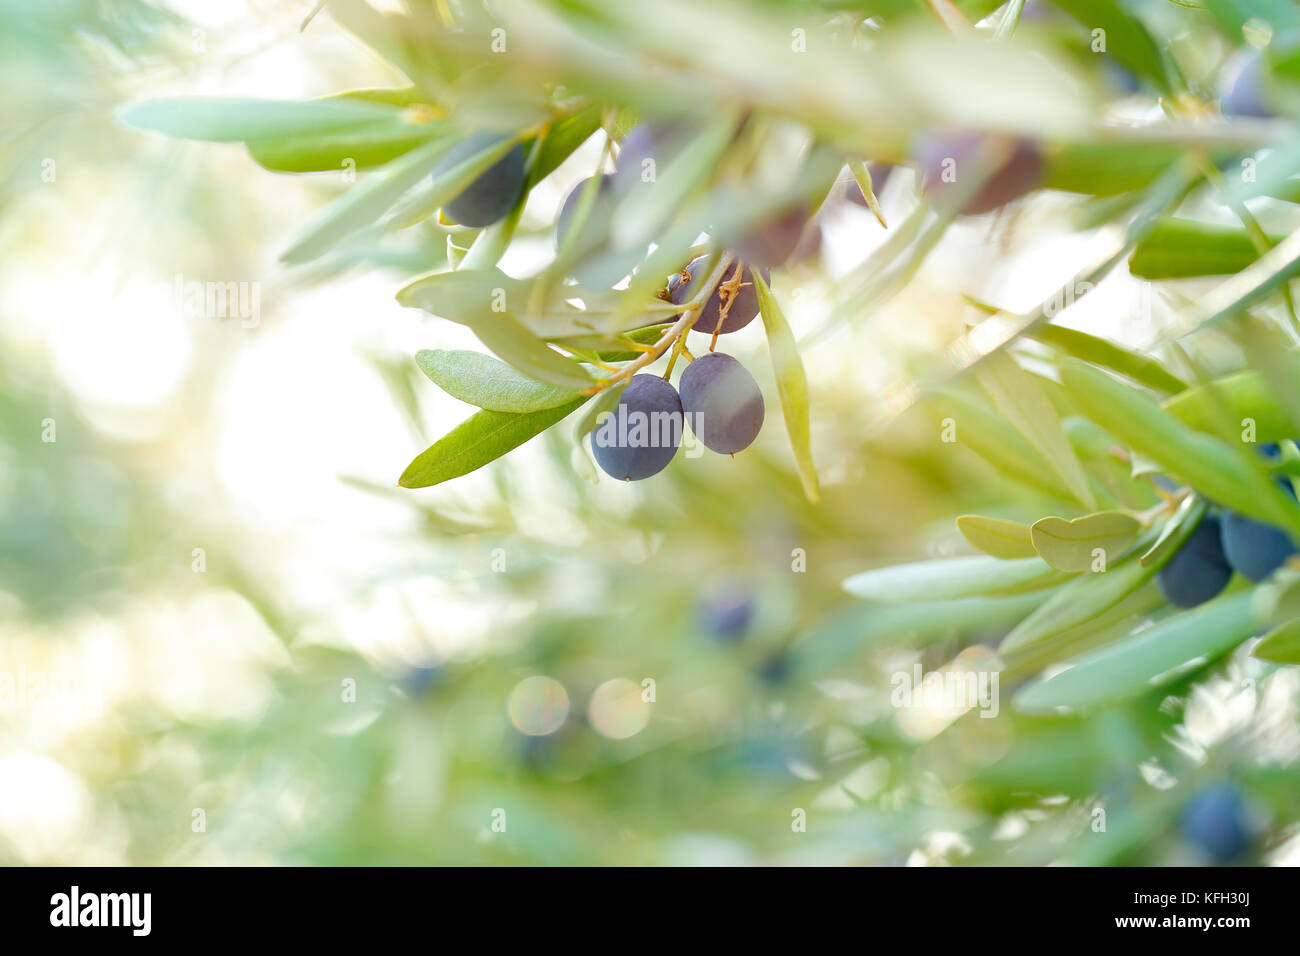 Olive Tree Hintergrund, reife kleine schwarze Früchte am Baum mit frischen grünen Blättern, schmackhaften mediterranen Gemüse, organische Nahrung, Herbst Ernte Stockfoto